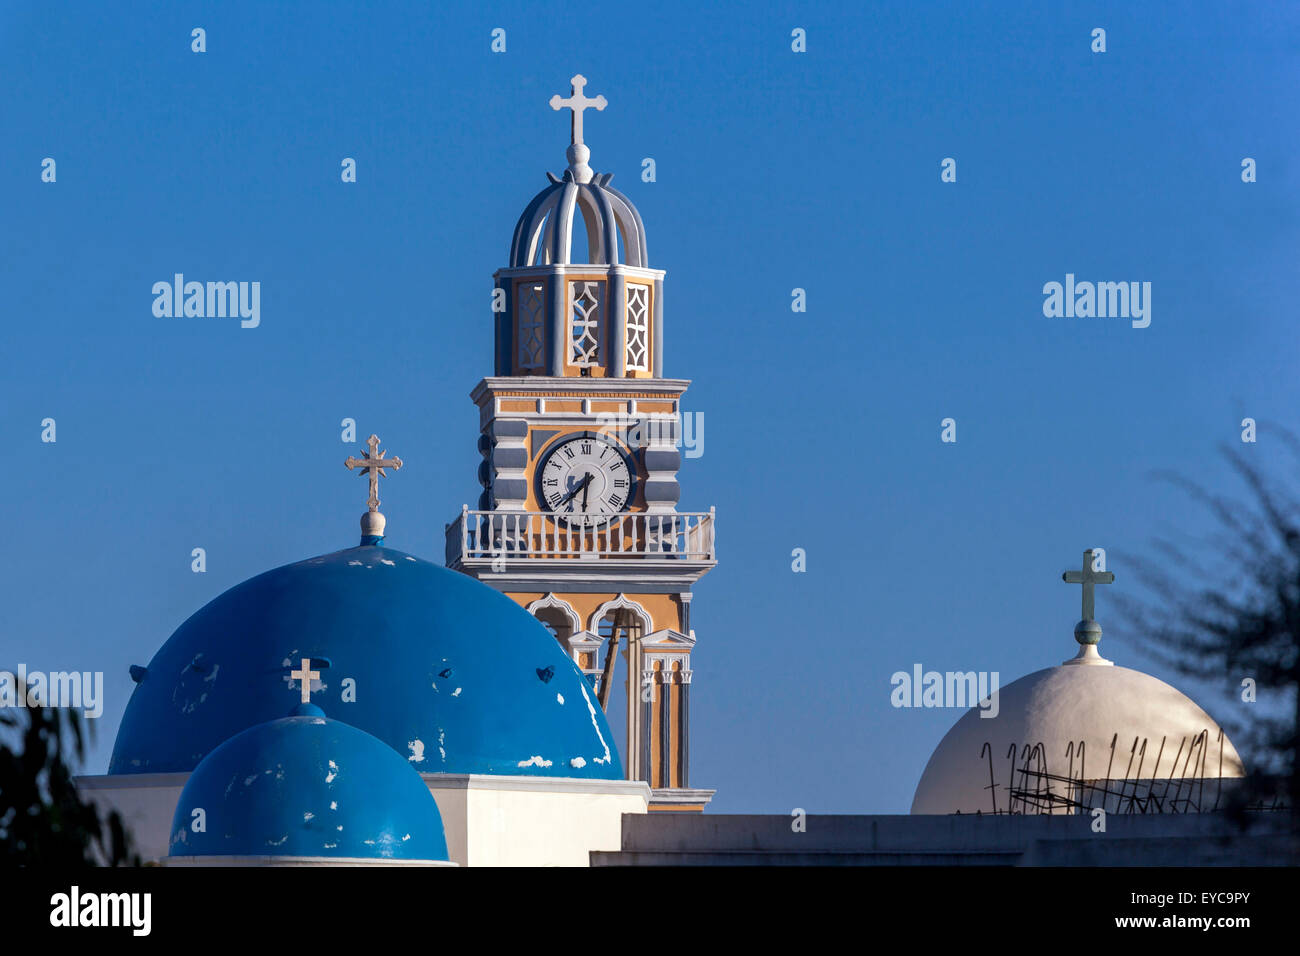 Fira Santorini Katholische Kathedrale, Thira Santorini, Kykladen, Griechische Inseln, Griechenland Stockfoto